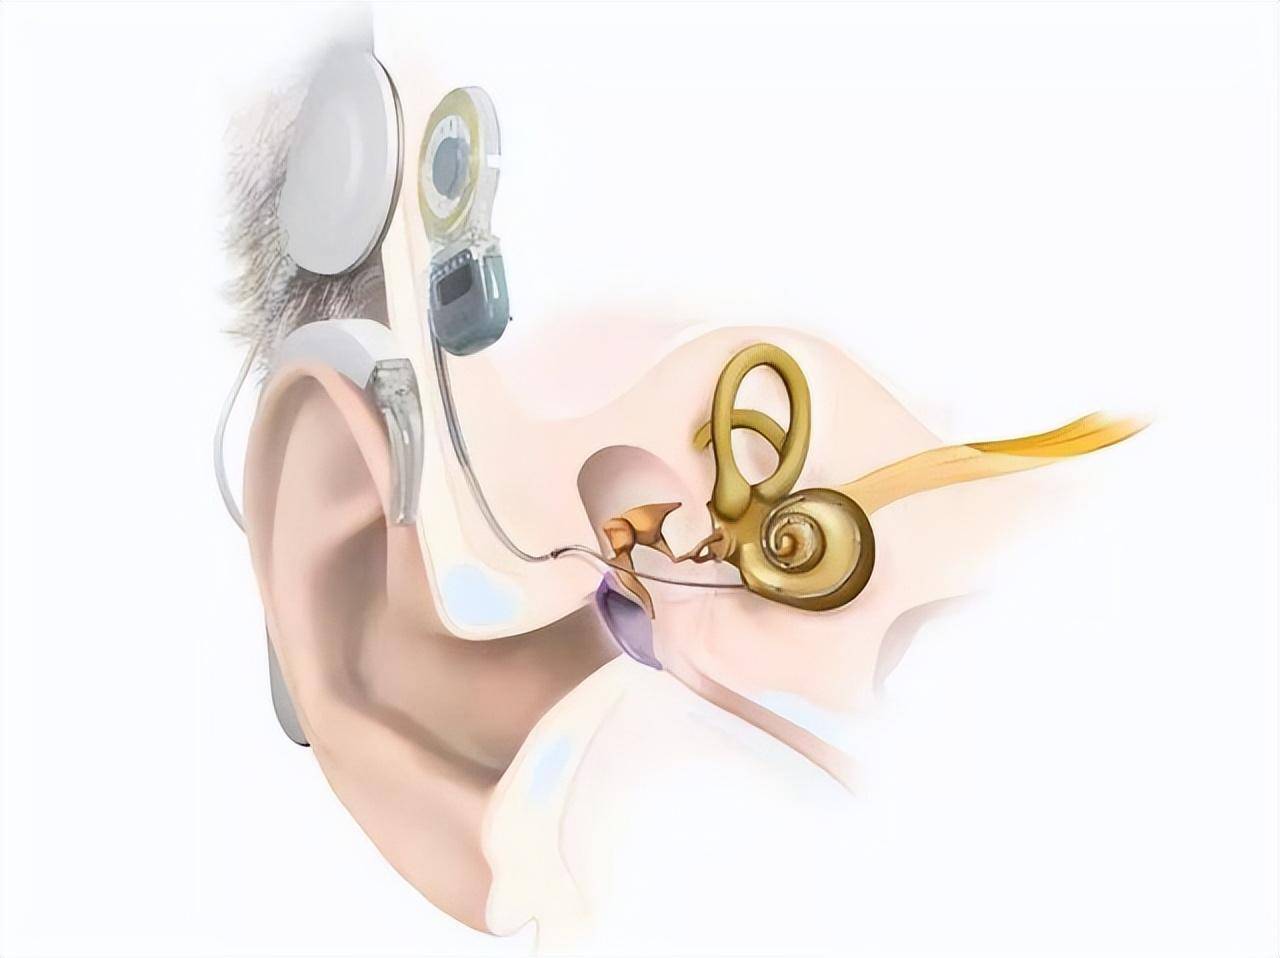 佩带助听器无效或效果不佳的大前庭患者,需要进行人工耳蜗植入